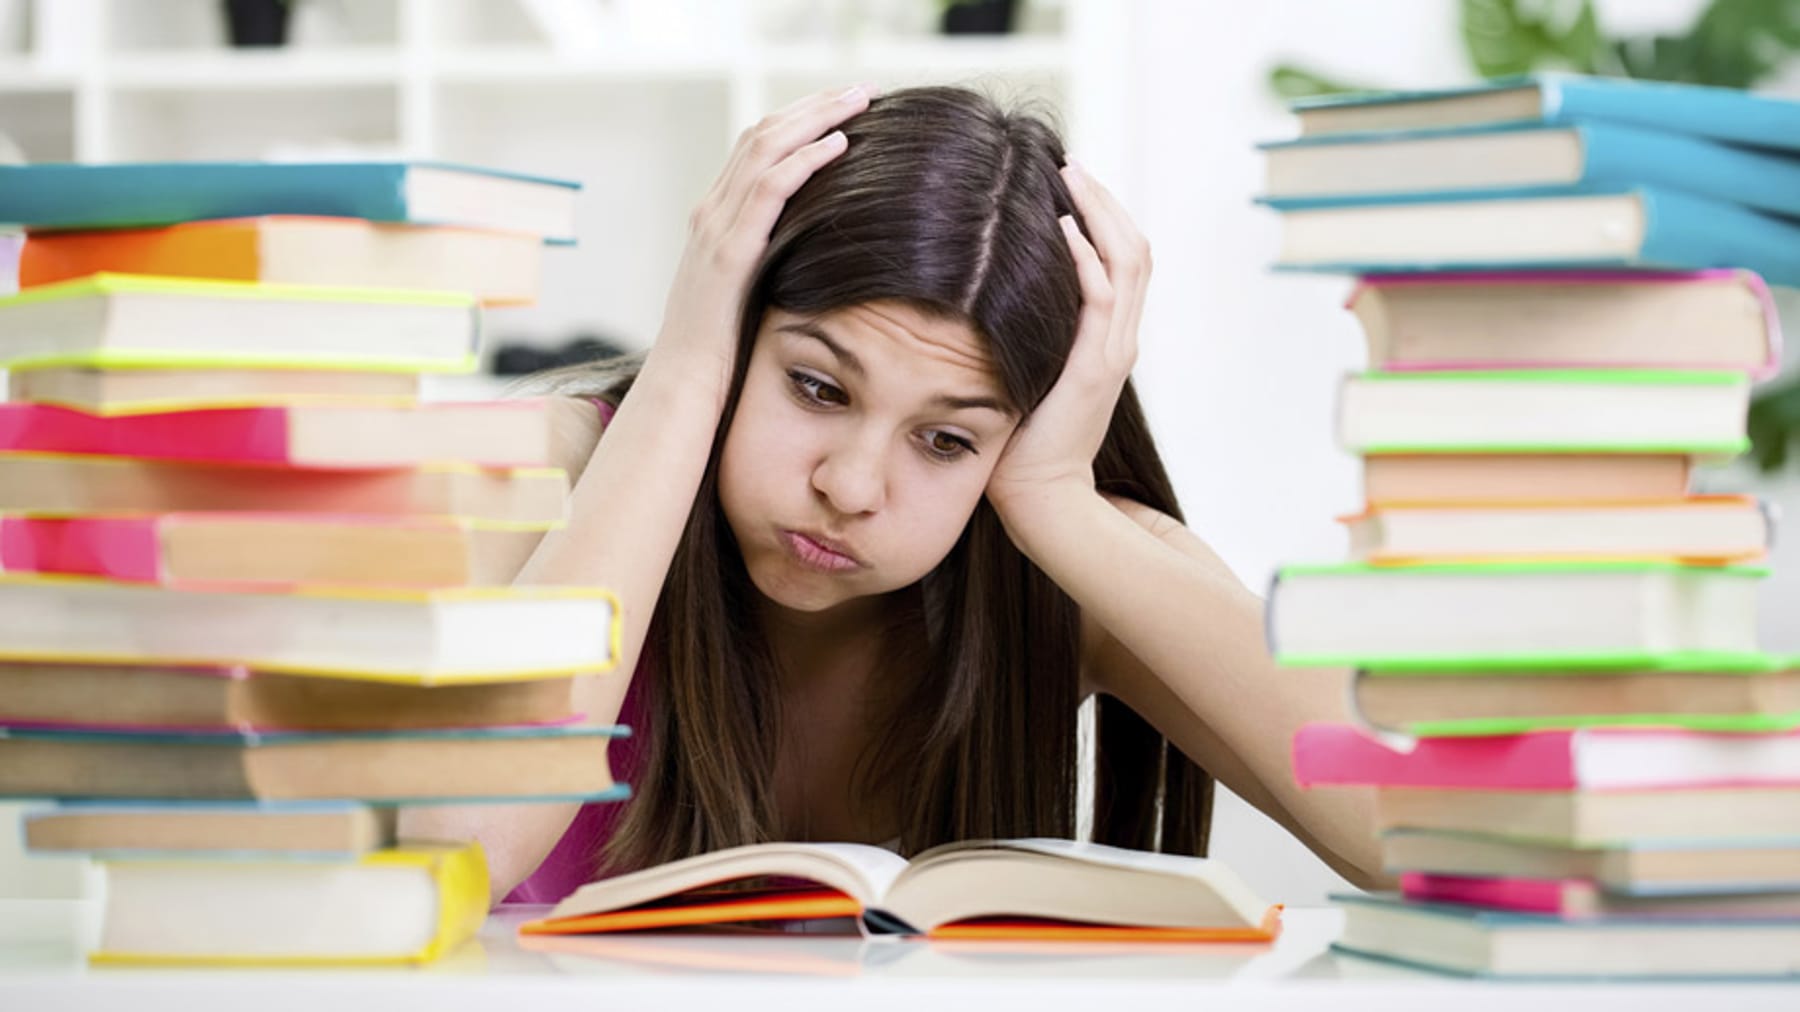 Ютуб домашнее задание. Девушка с учебниками. Студент над учебниками. Подросток с учебниками. Стресс от учебы.